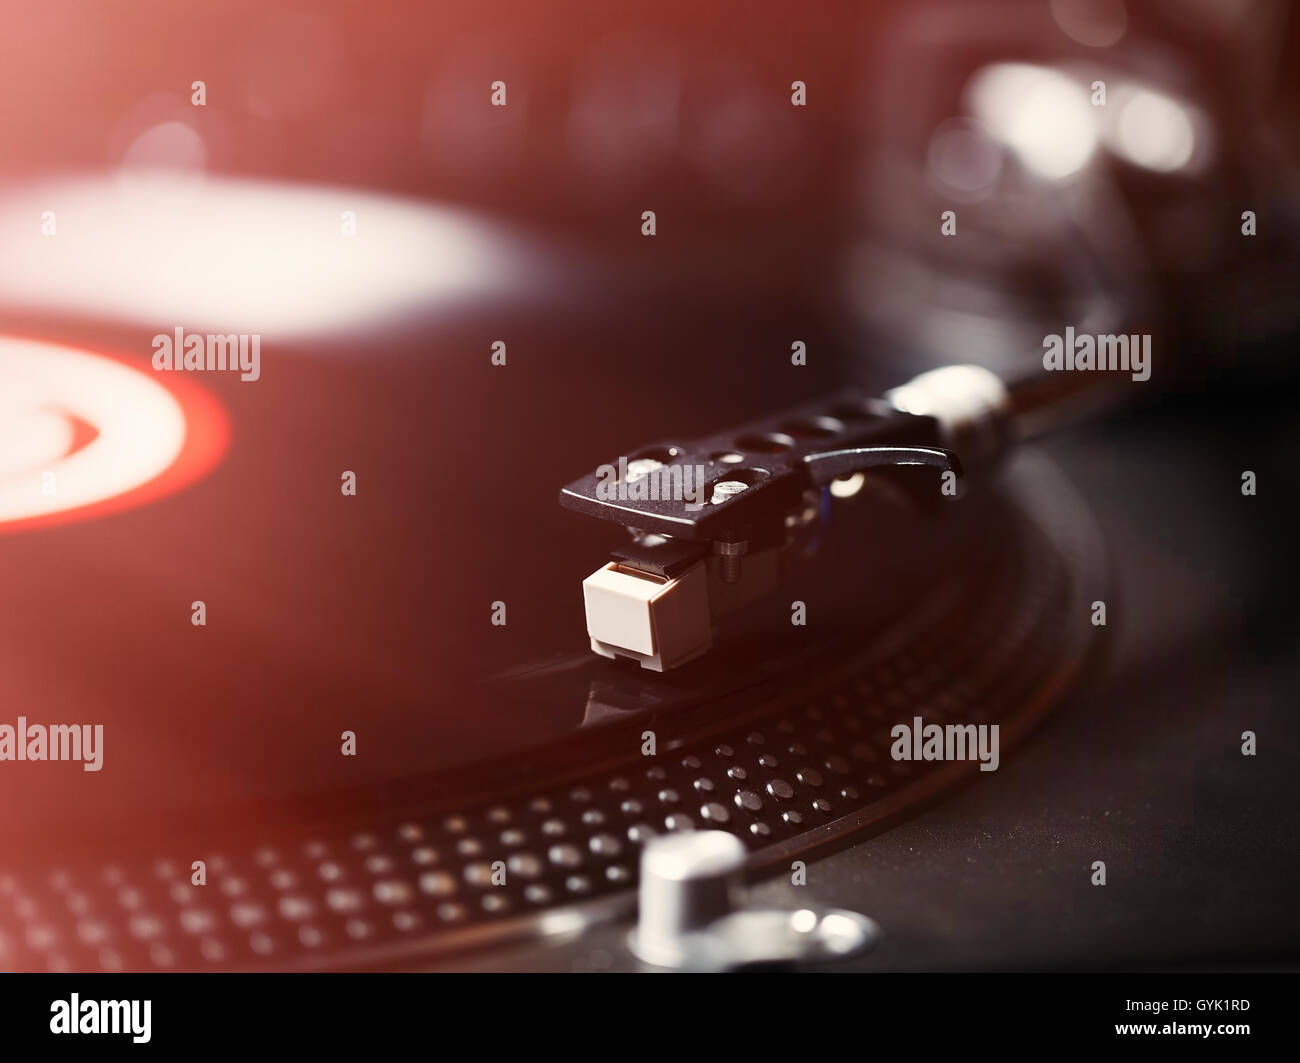 Plattenspieler Vinyl-Plattenspieler, analoge Tontechnik für DJ analoger und digitaler Musik. Großaufnahme, Makro Ausrüstung für professionelle Studio, Konzert, Event. Stockfoto